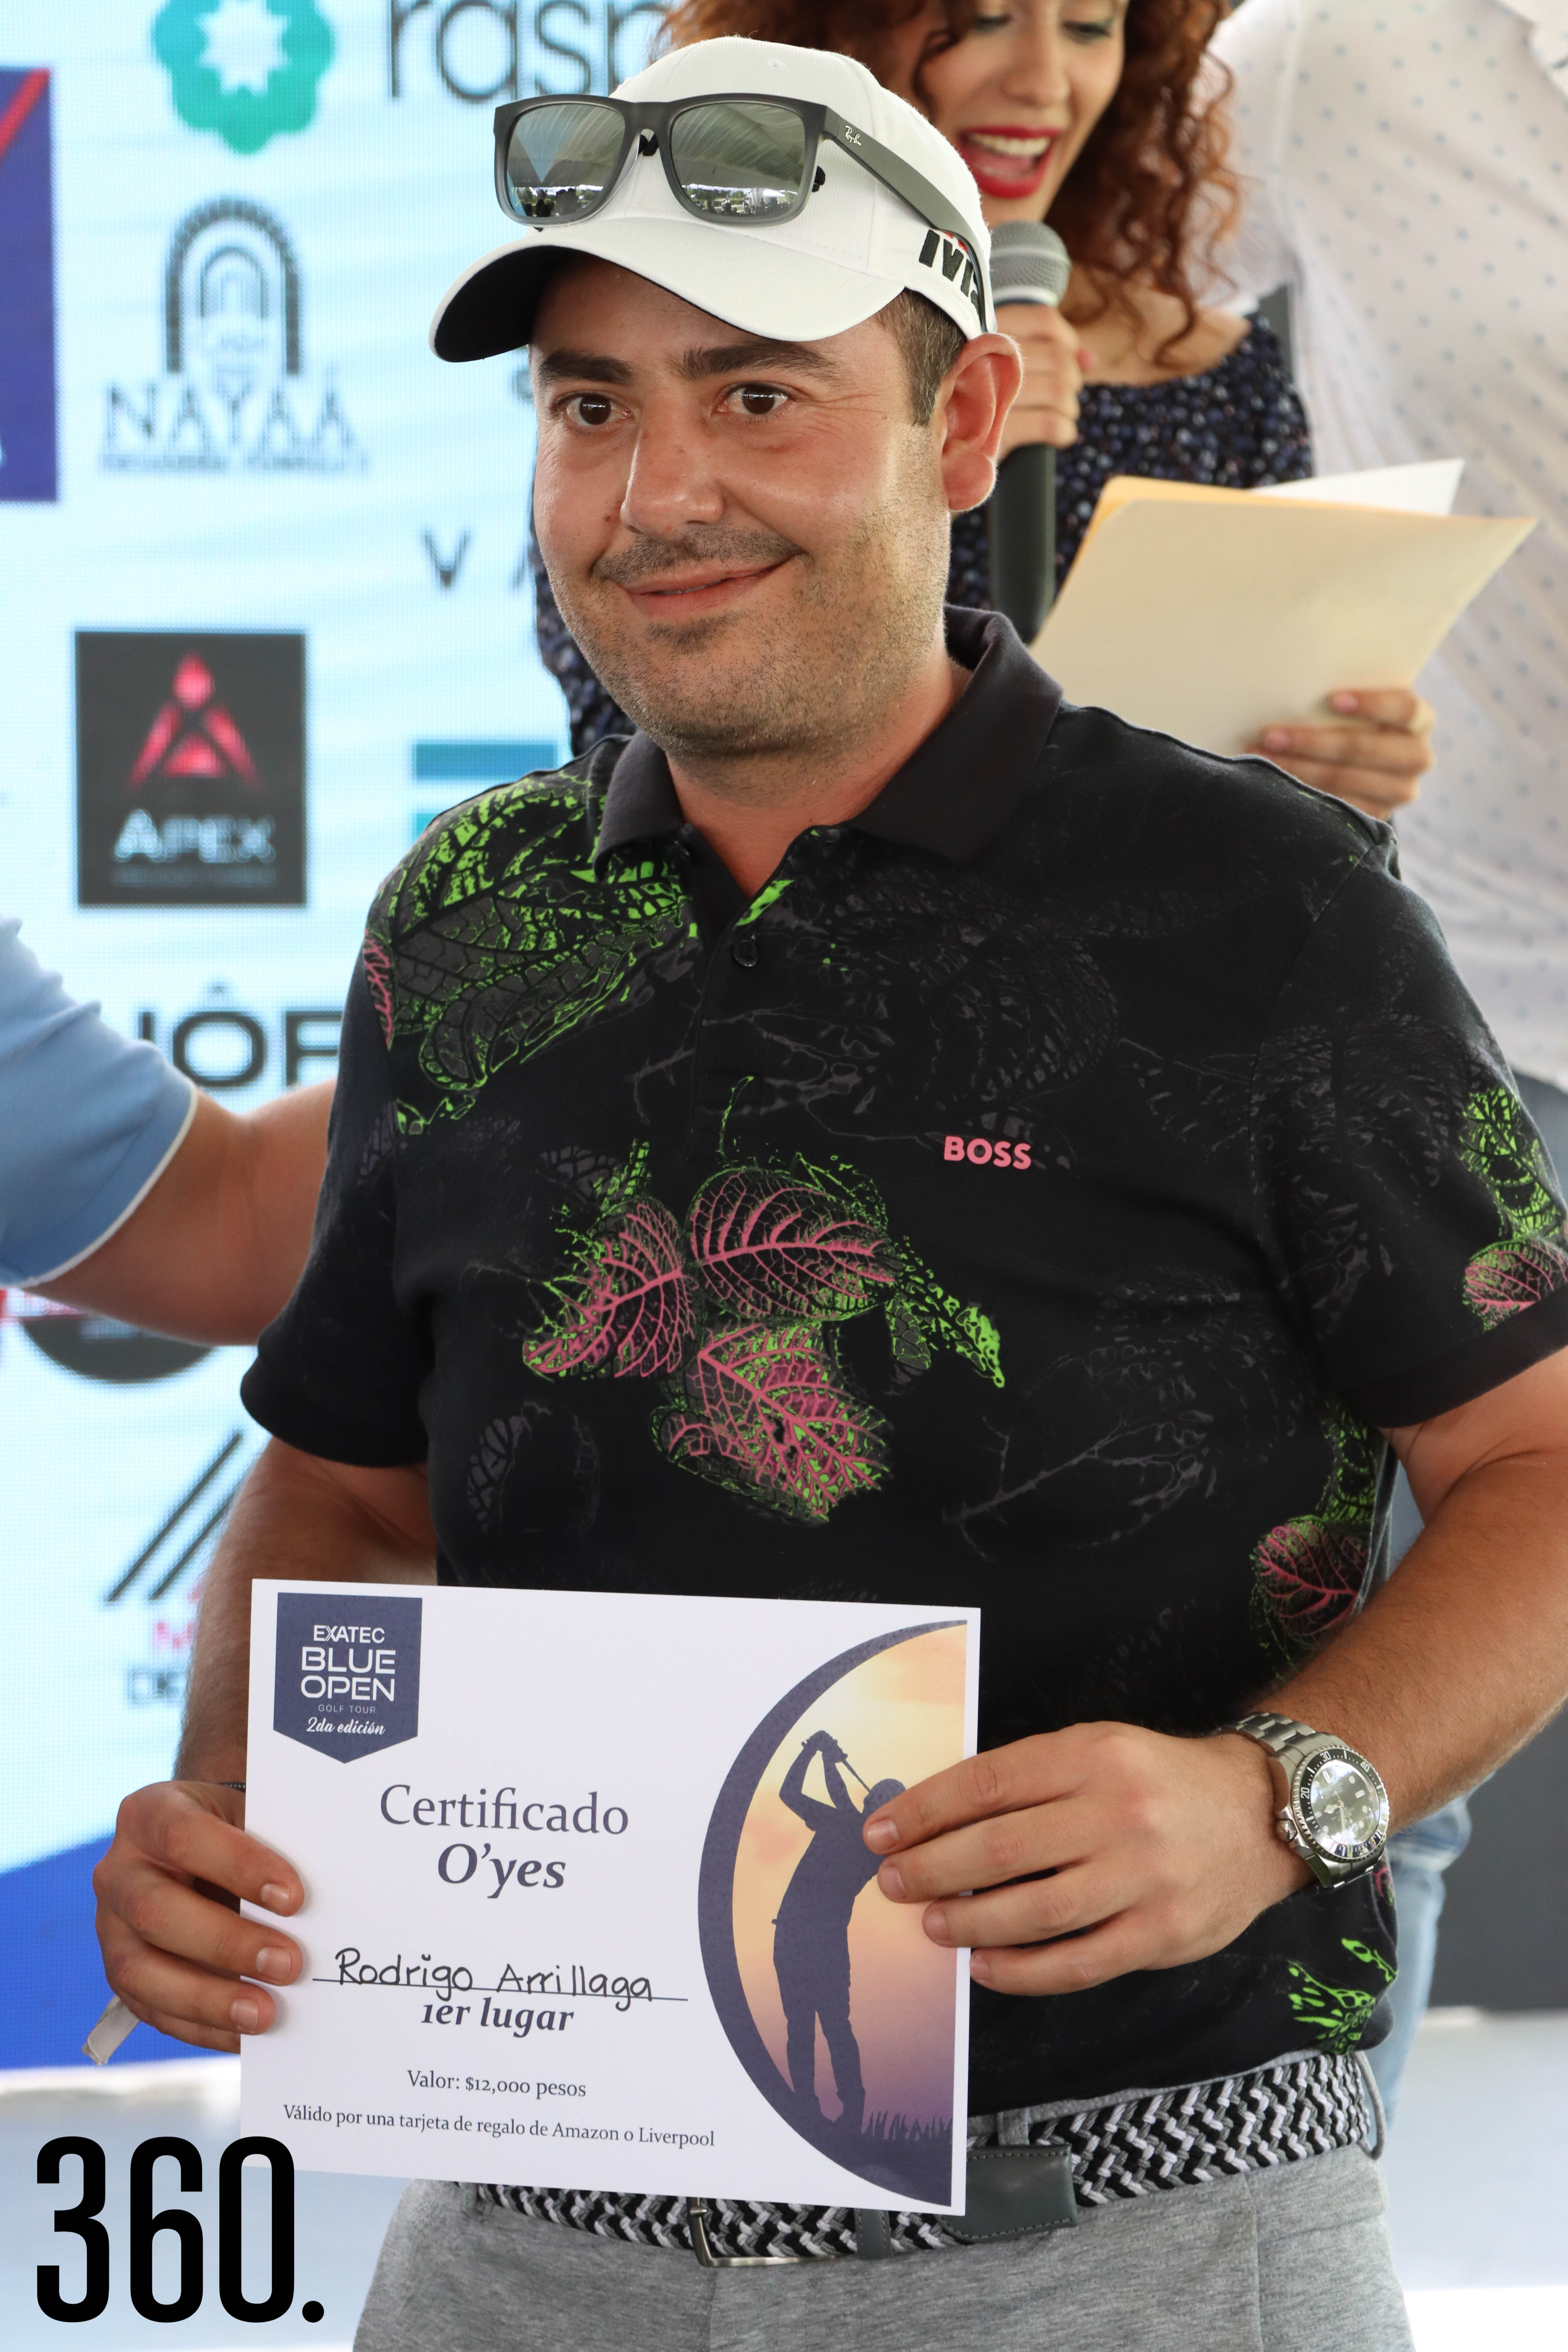 Rodrigo Arrillaga, 1er lugar en O’Yes del Hoyo 4.